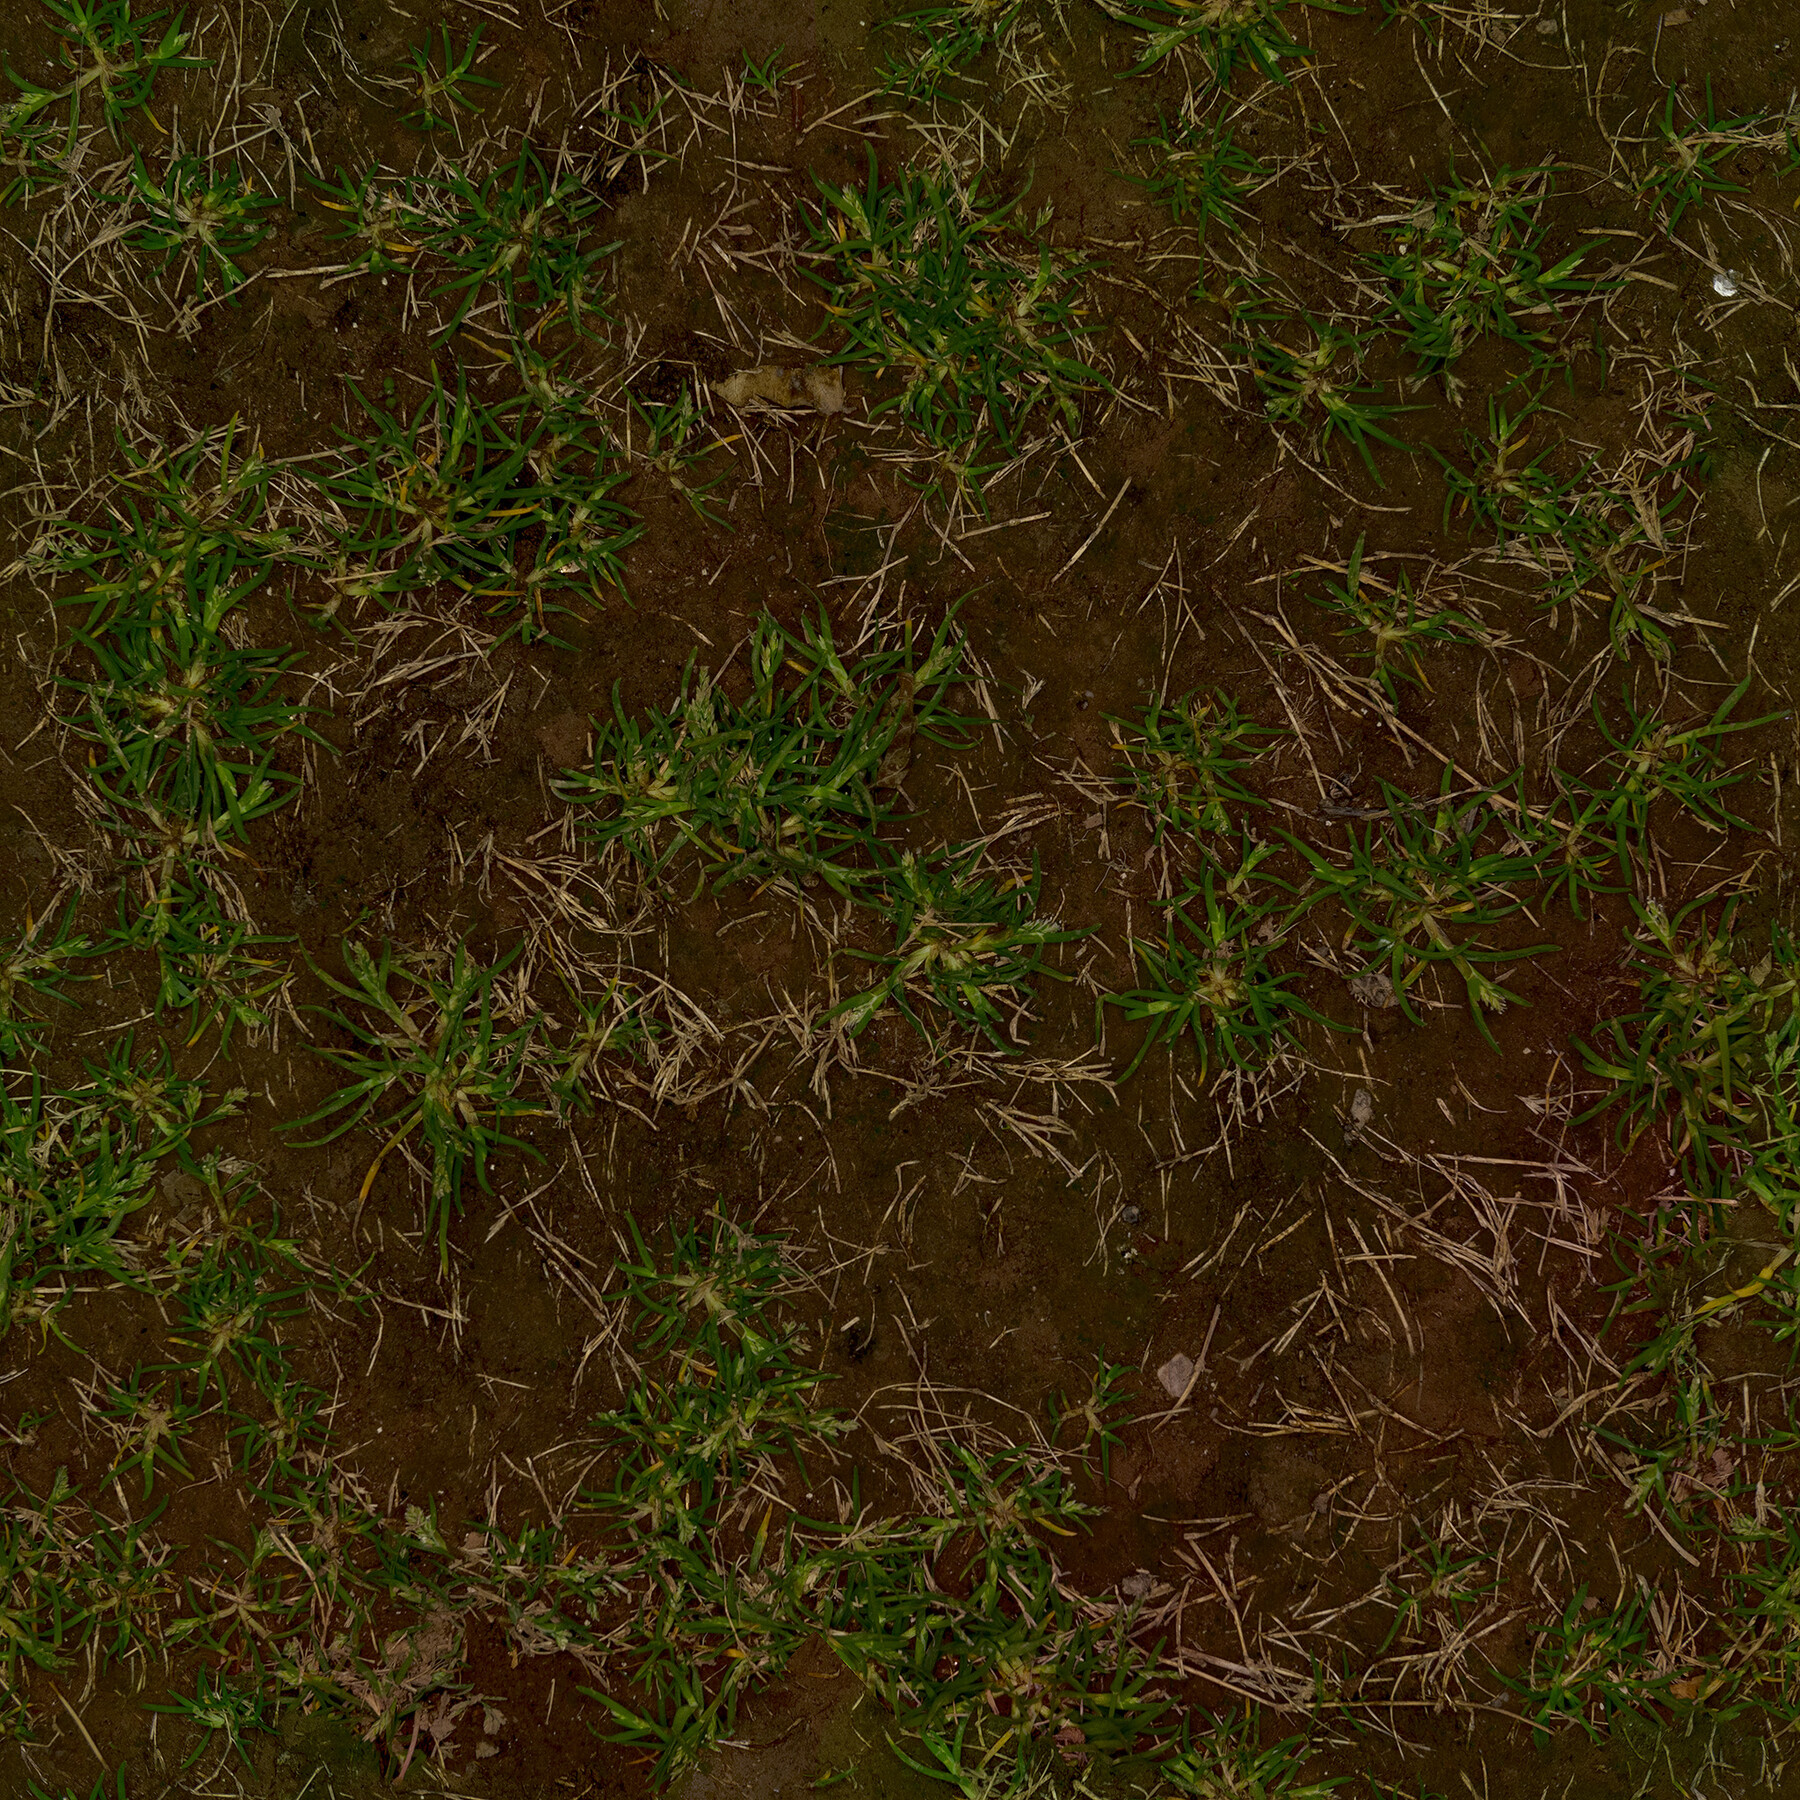 Dirt and Grass (Texture)